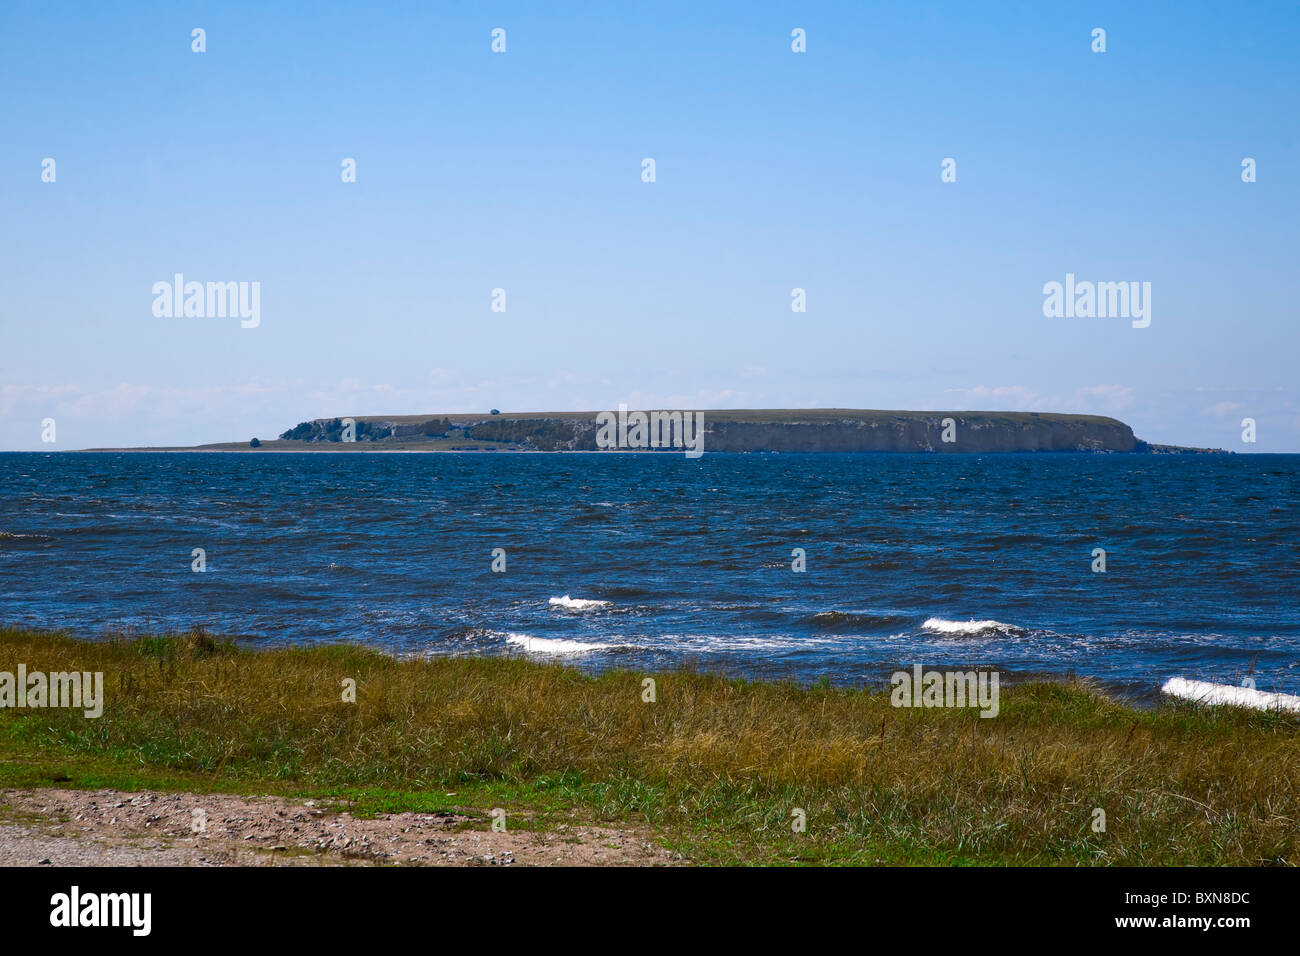 La más pequeña de las islas Karlso visto desde Djupvik, Gotland, SUECIA. Foto de stock